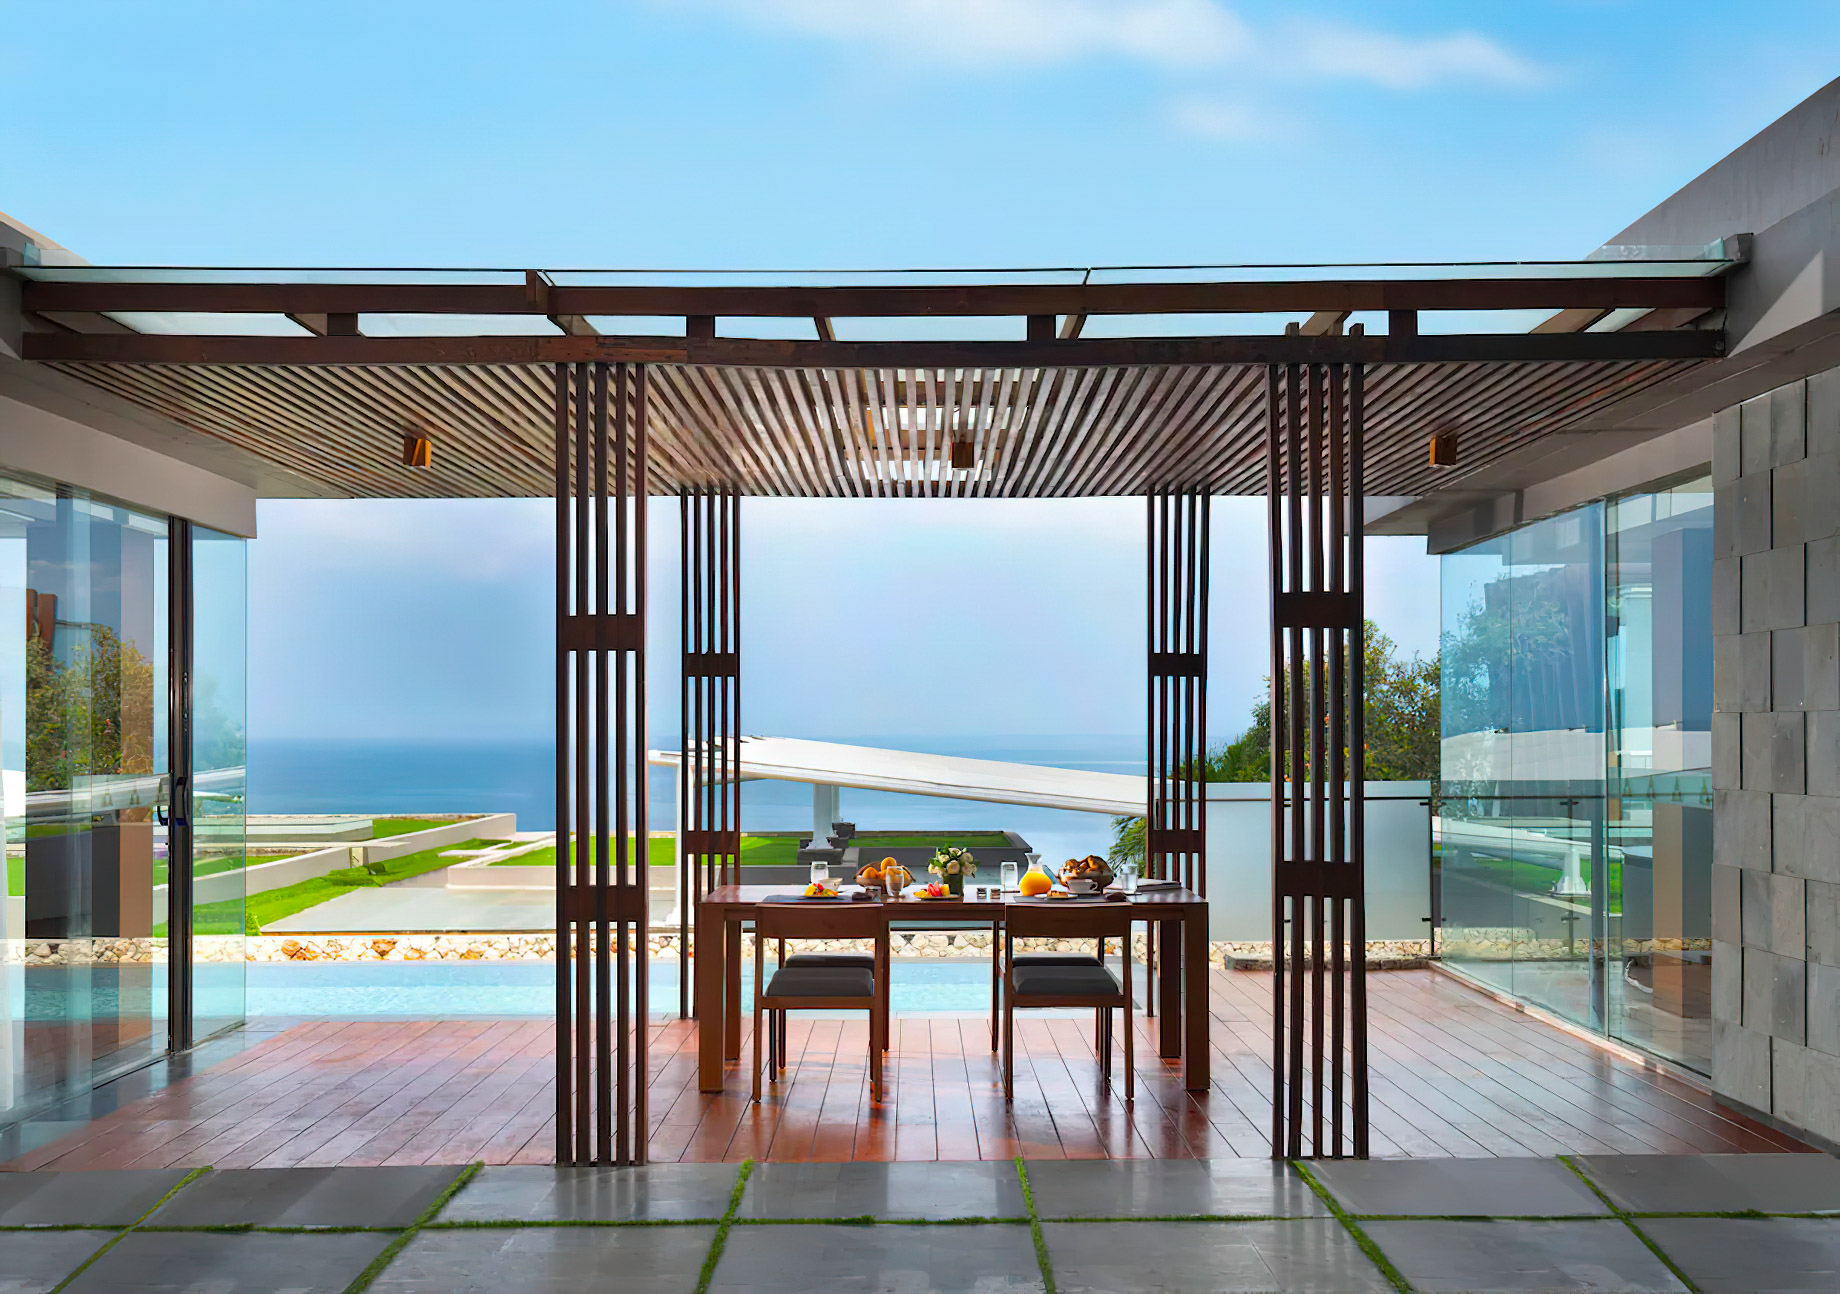 Anantara Uluwatu Bali Resort – Bali, Indonesia – Two Bedroom Ocean View Pool Villa